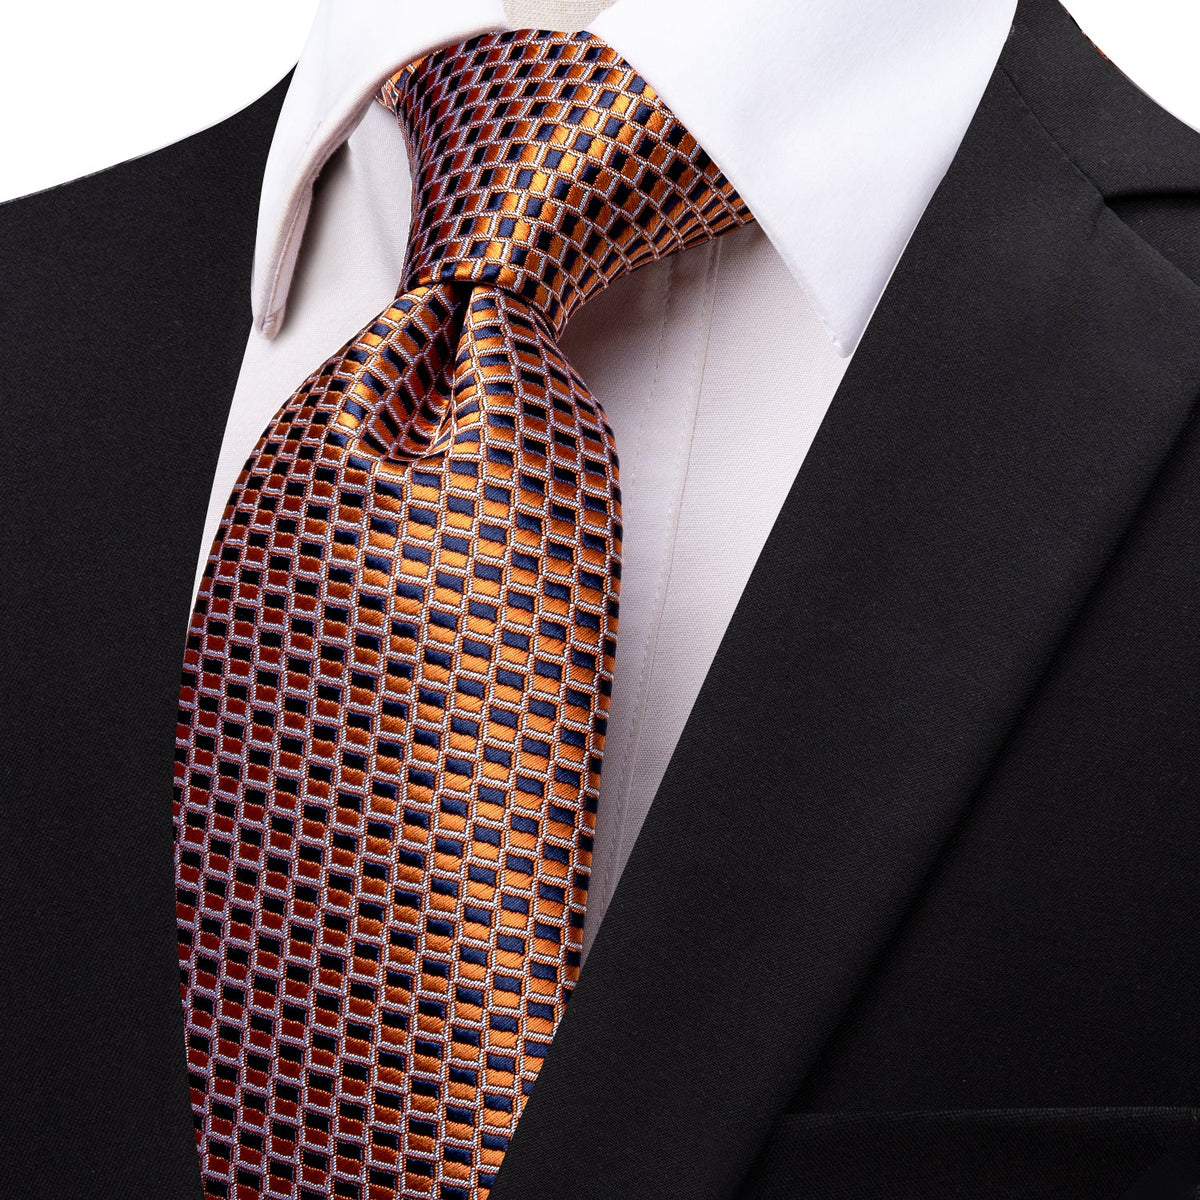 Luxury Orange Blue Plaid Silk Necktie